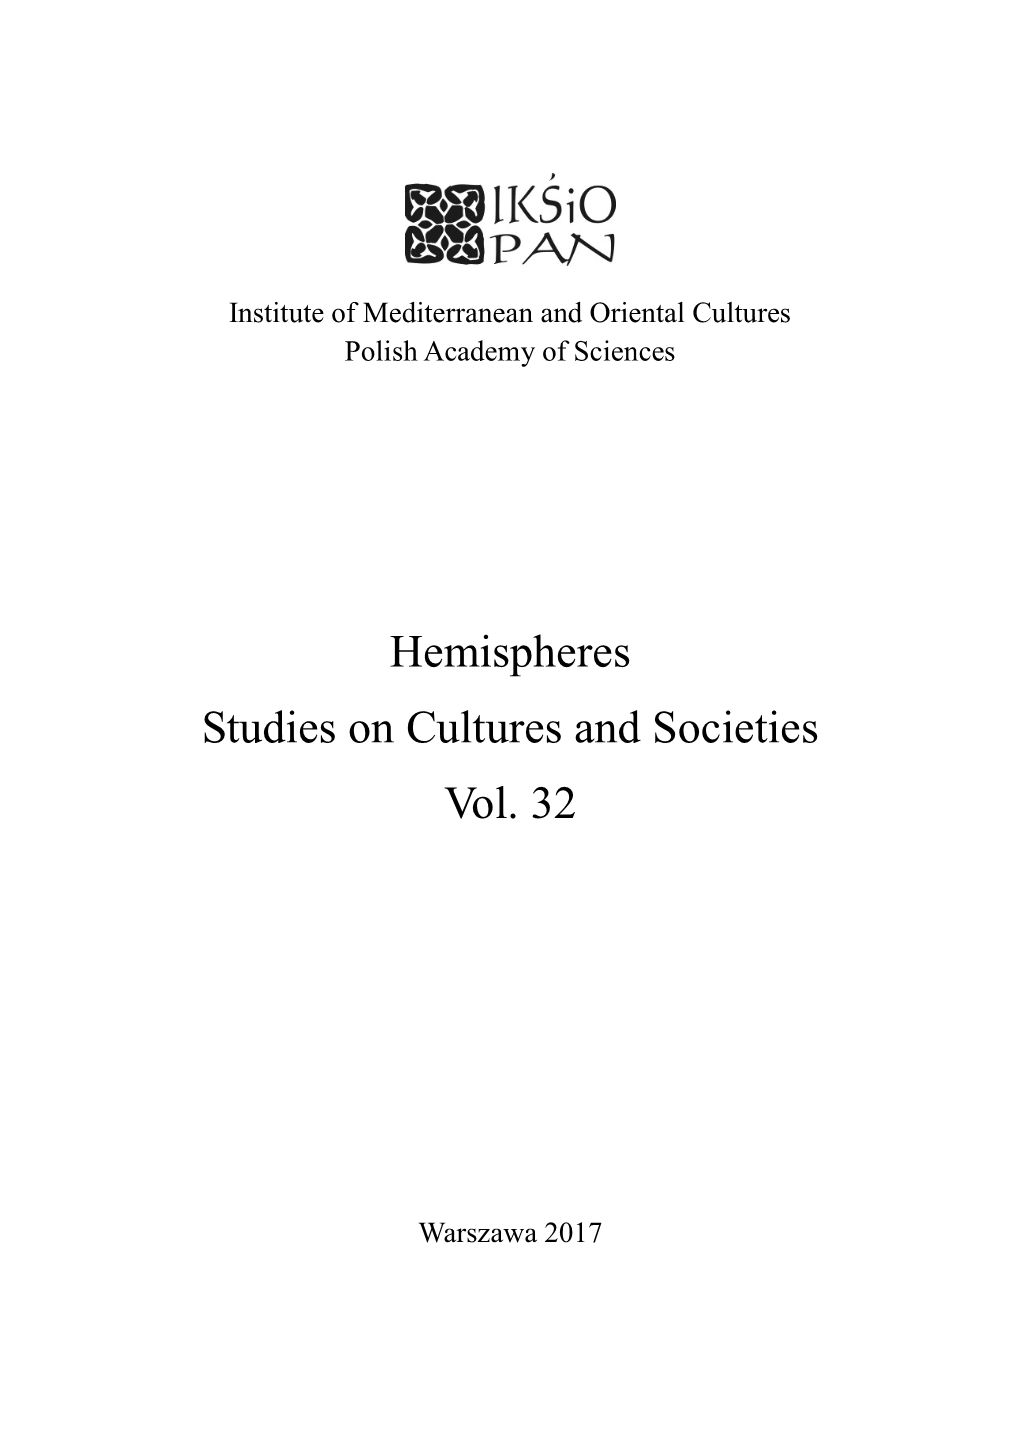 Hemispheres Studies on Cultures and Societies Vol. 32